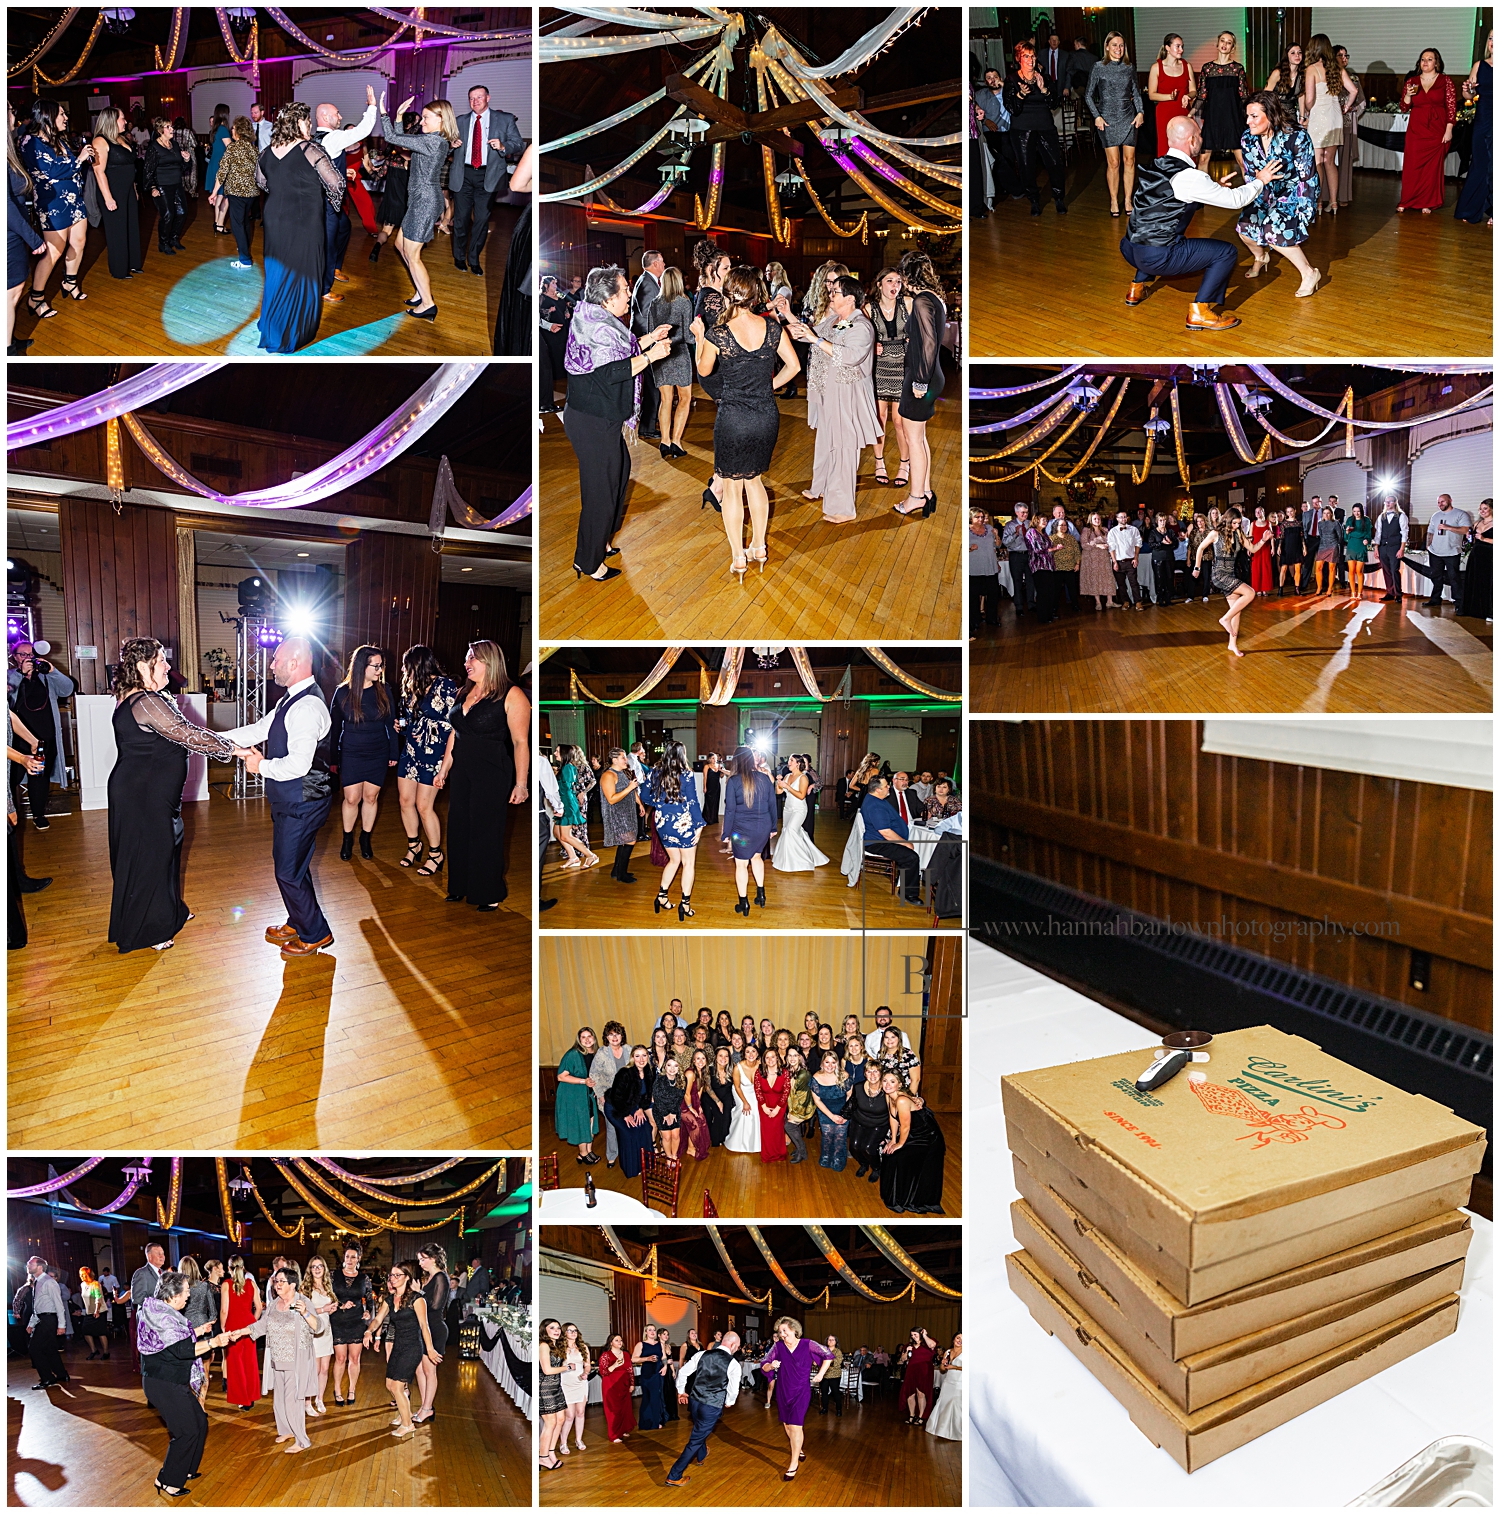 Wedding reception dancing collage in Oglebay's Pine Room.